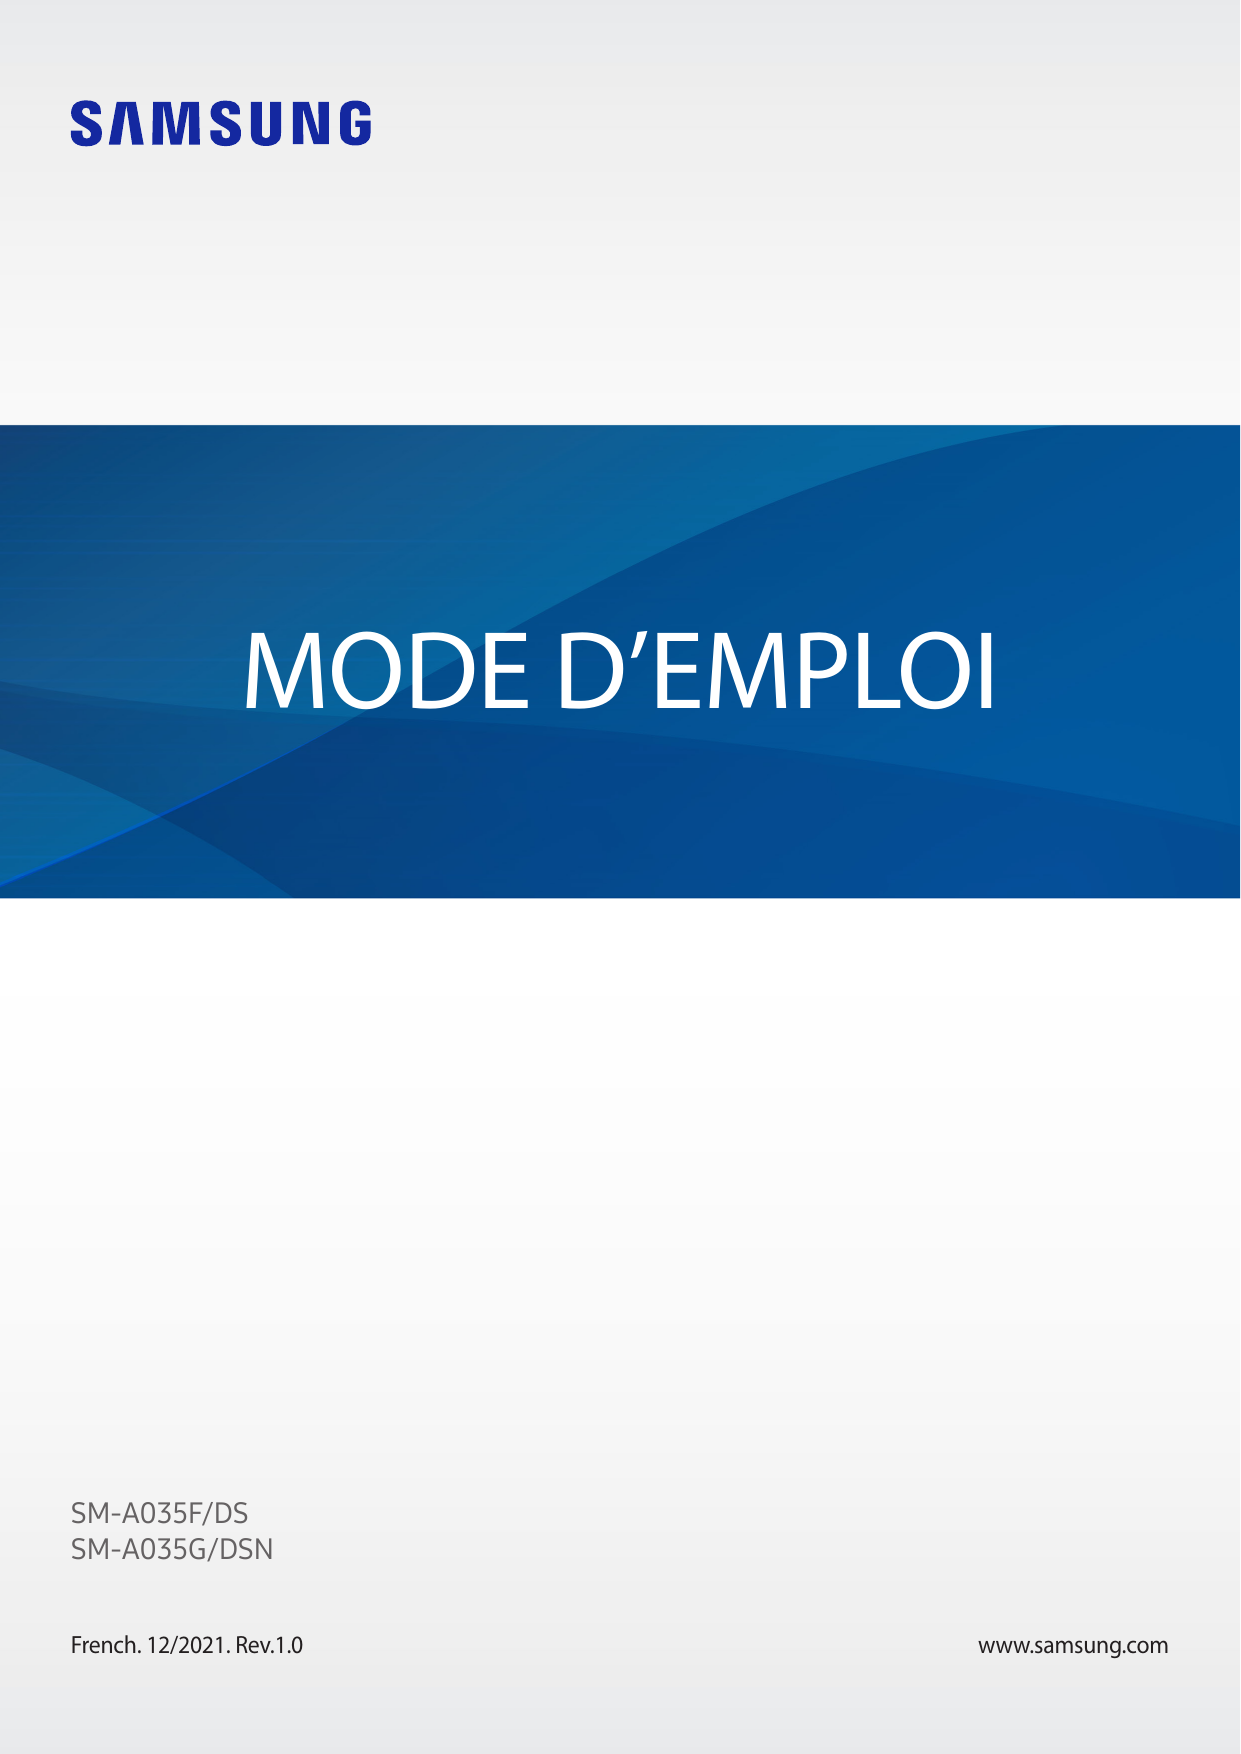 MODE D’EMPLOISM-A035F/DSSM-A035G/DSNFrench. 12/2021. Rev.1.0www.samsung.com